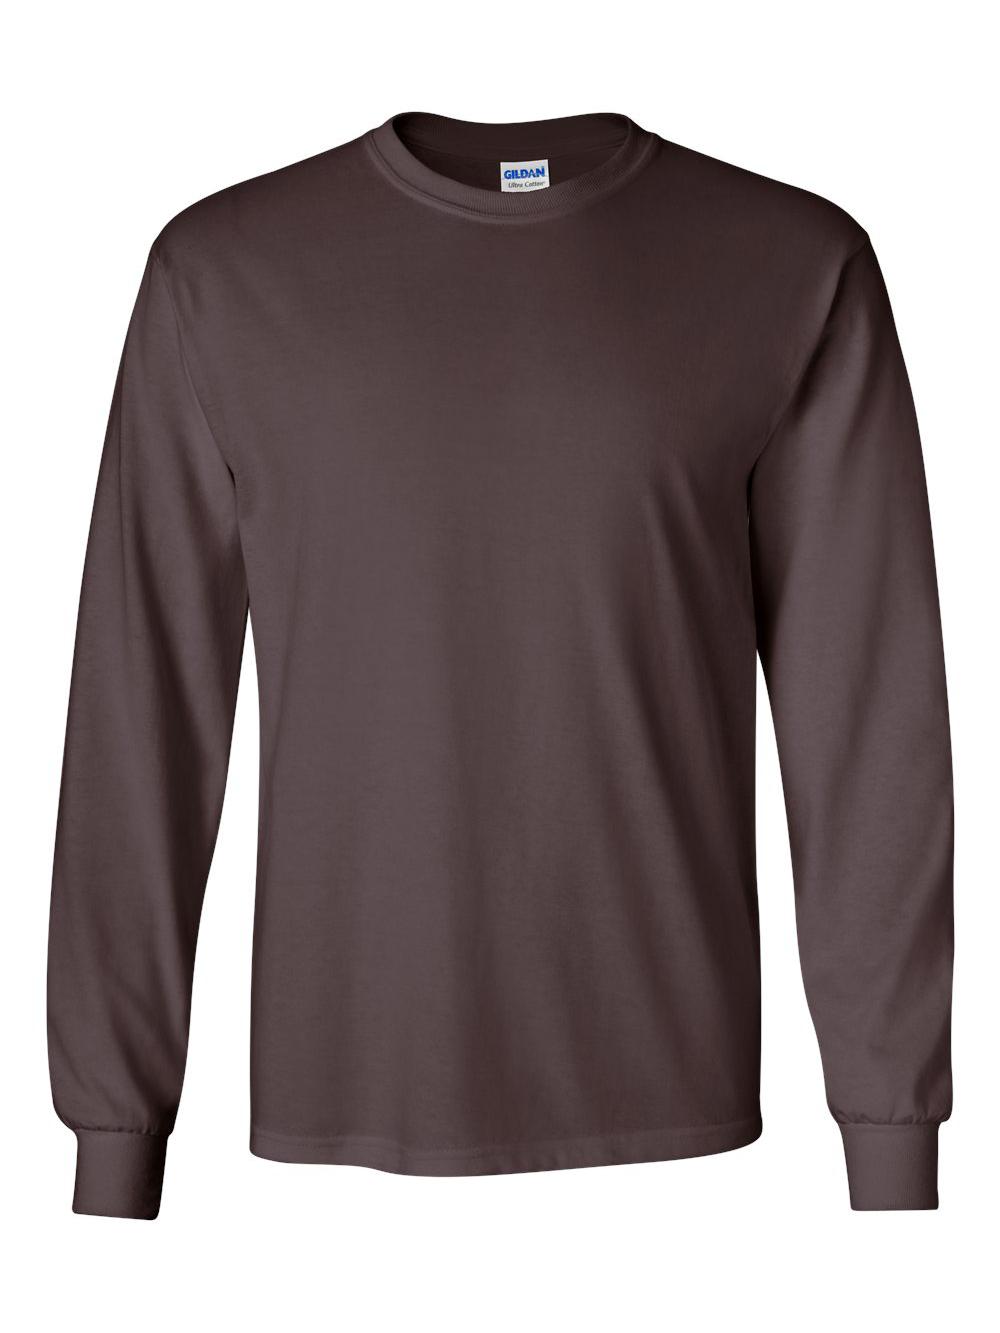 Style G2400 Gildan Men's Ultra Cotton Long Sleeve T-Shirt 